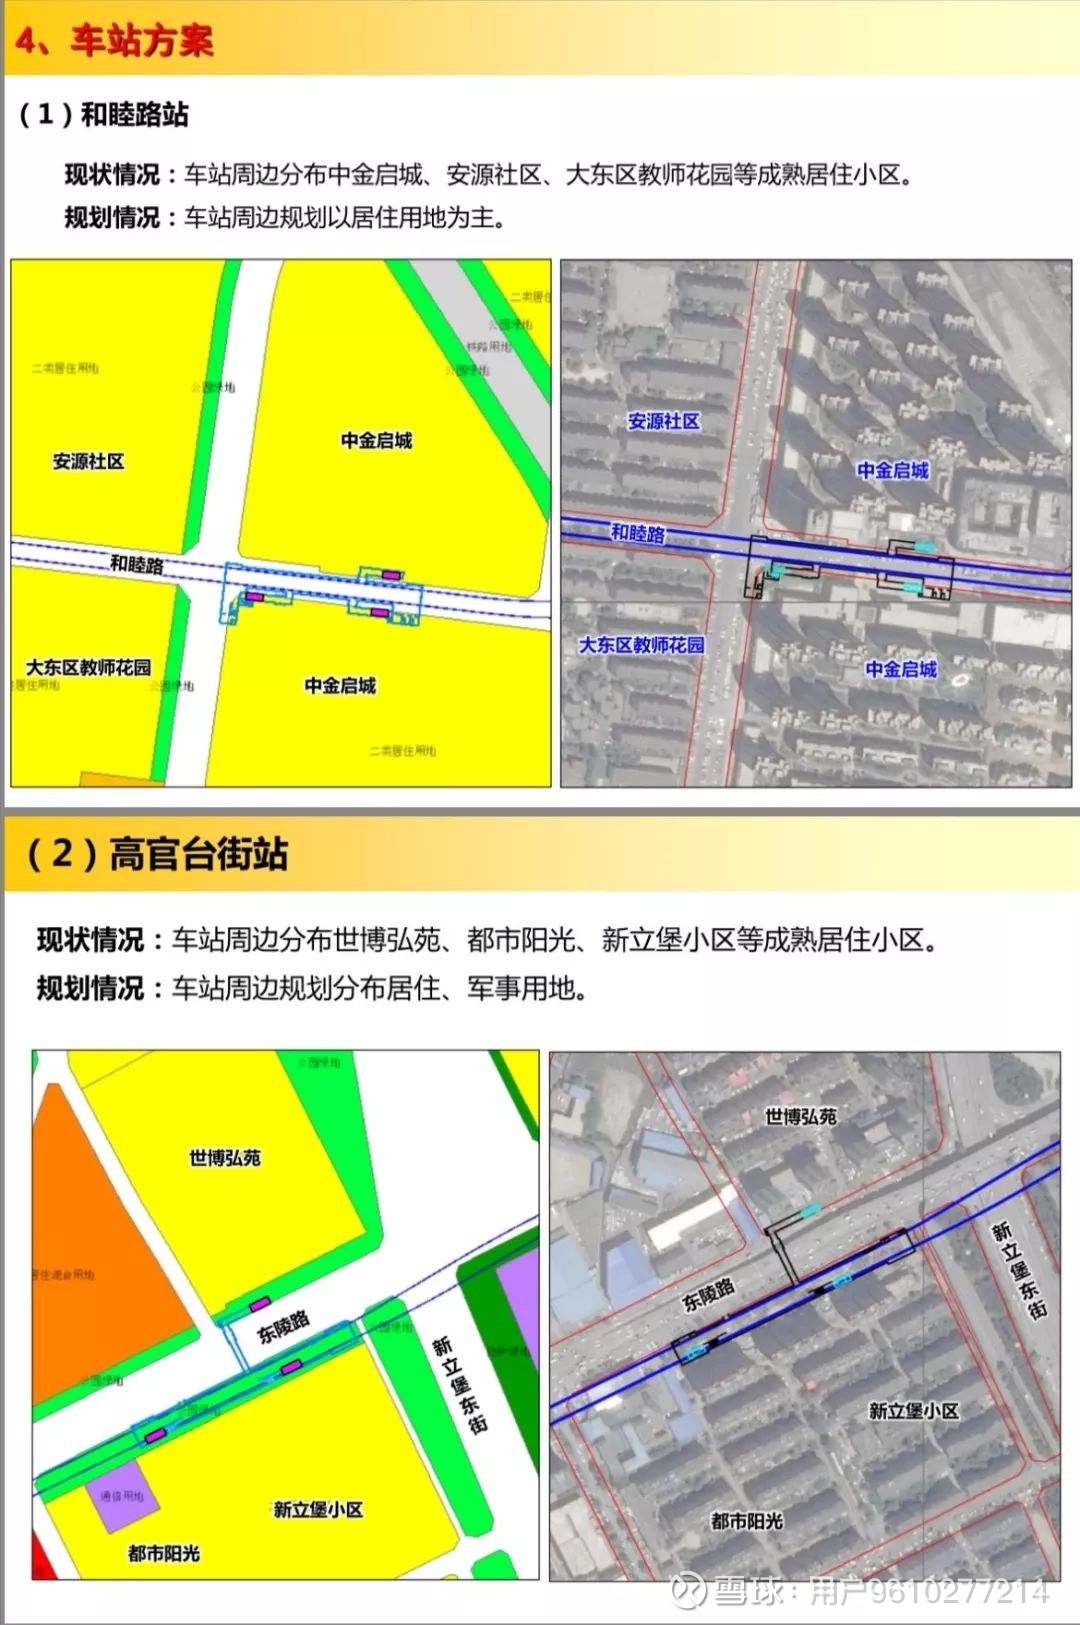 深圳市拟建设20号线北延段项目楼盘将享有利好影响